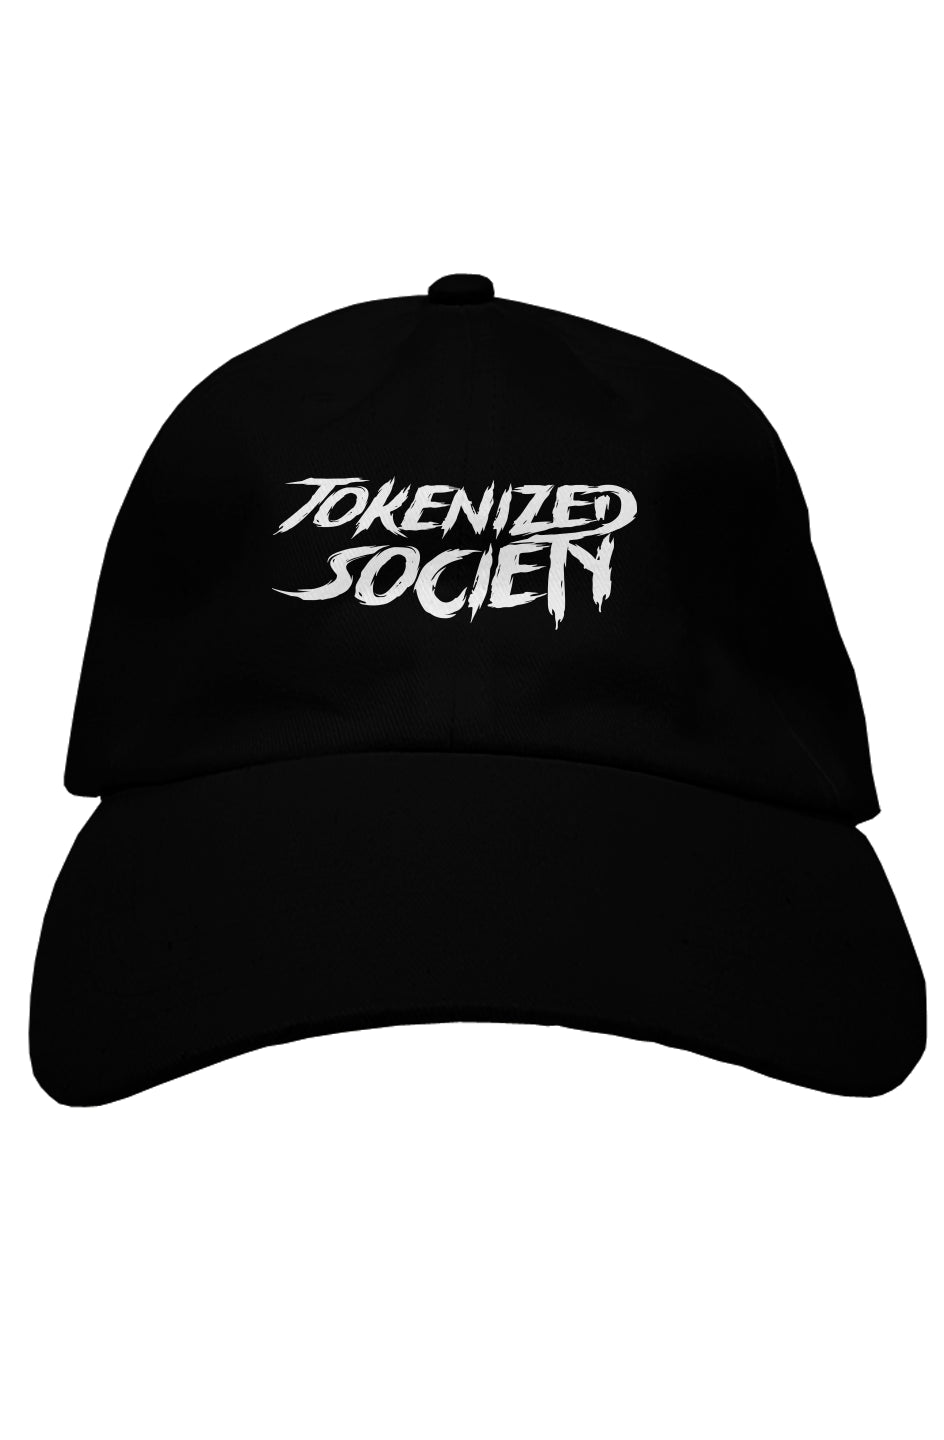 Tokenized Society Dad Hat